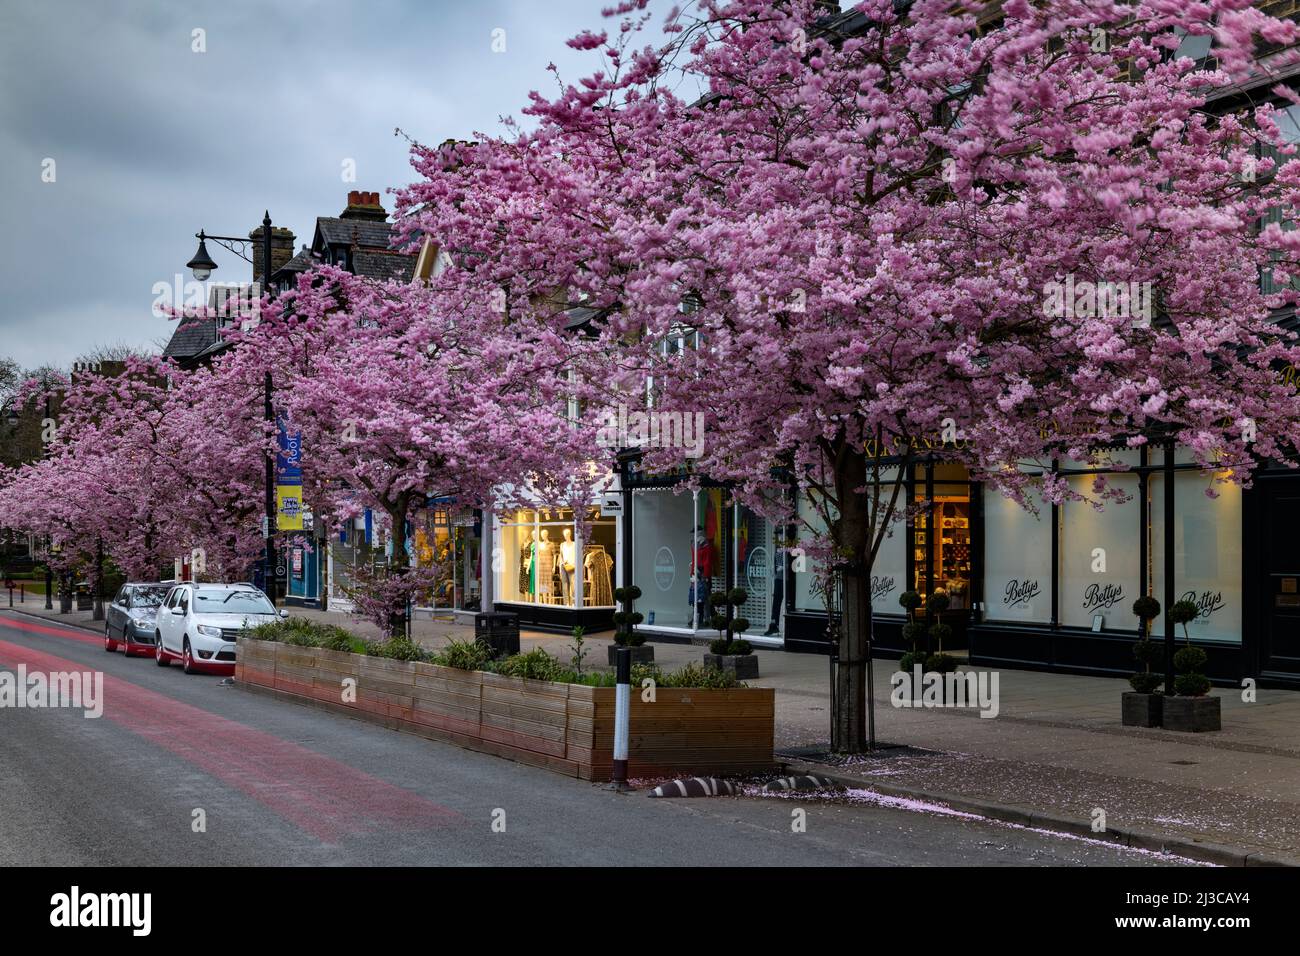 Centro storico di primavera (splendidi e colorati ciliegi in fiore, ristorante-cafe shopfront, sera) - The Grove, Ilkley, Yorkshire, Inghilterra, Regno Unito. Foto Stock